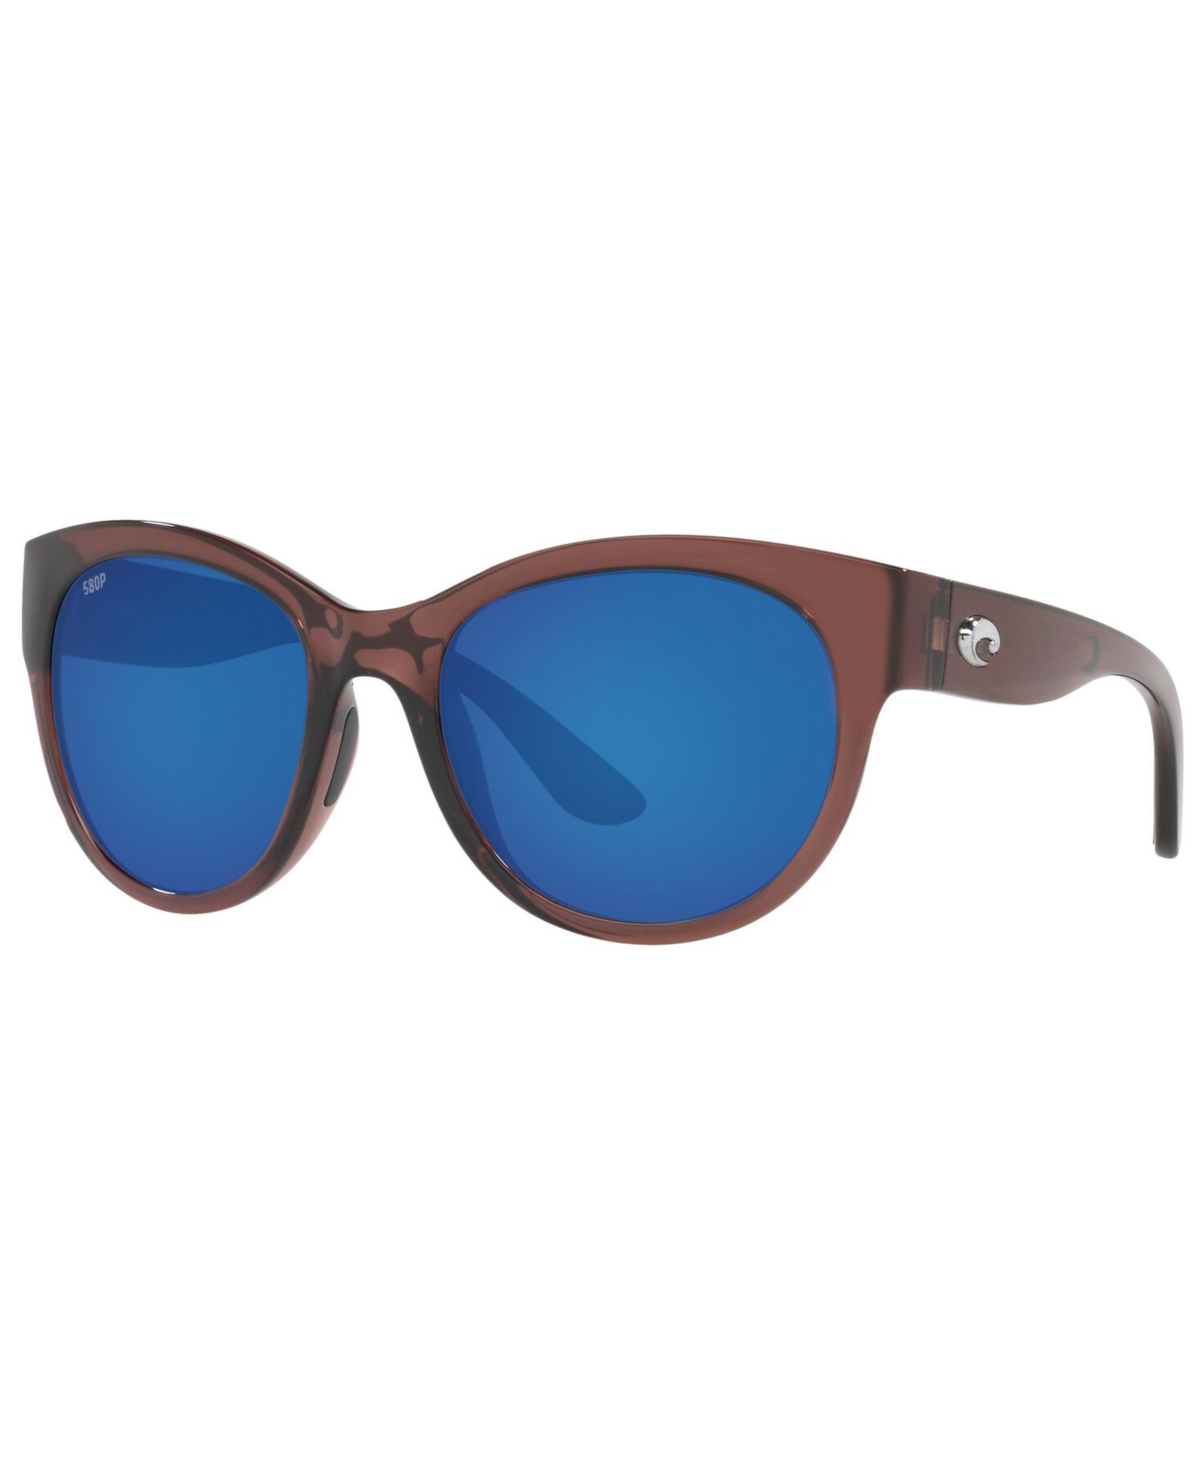 Maya Polarized Sunglasses, 6S9011 55 - SHINY URCHIN CRYSTAL/BLUE MIRROR P